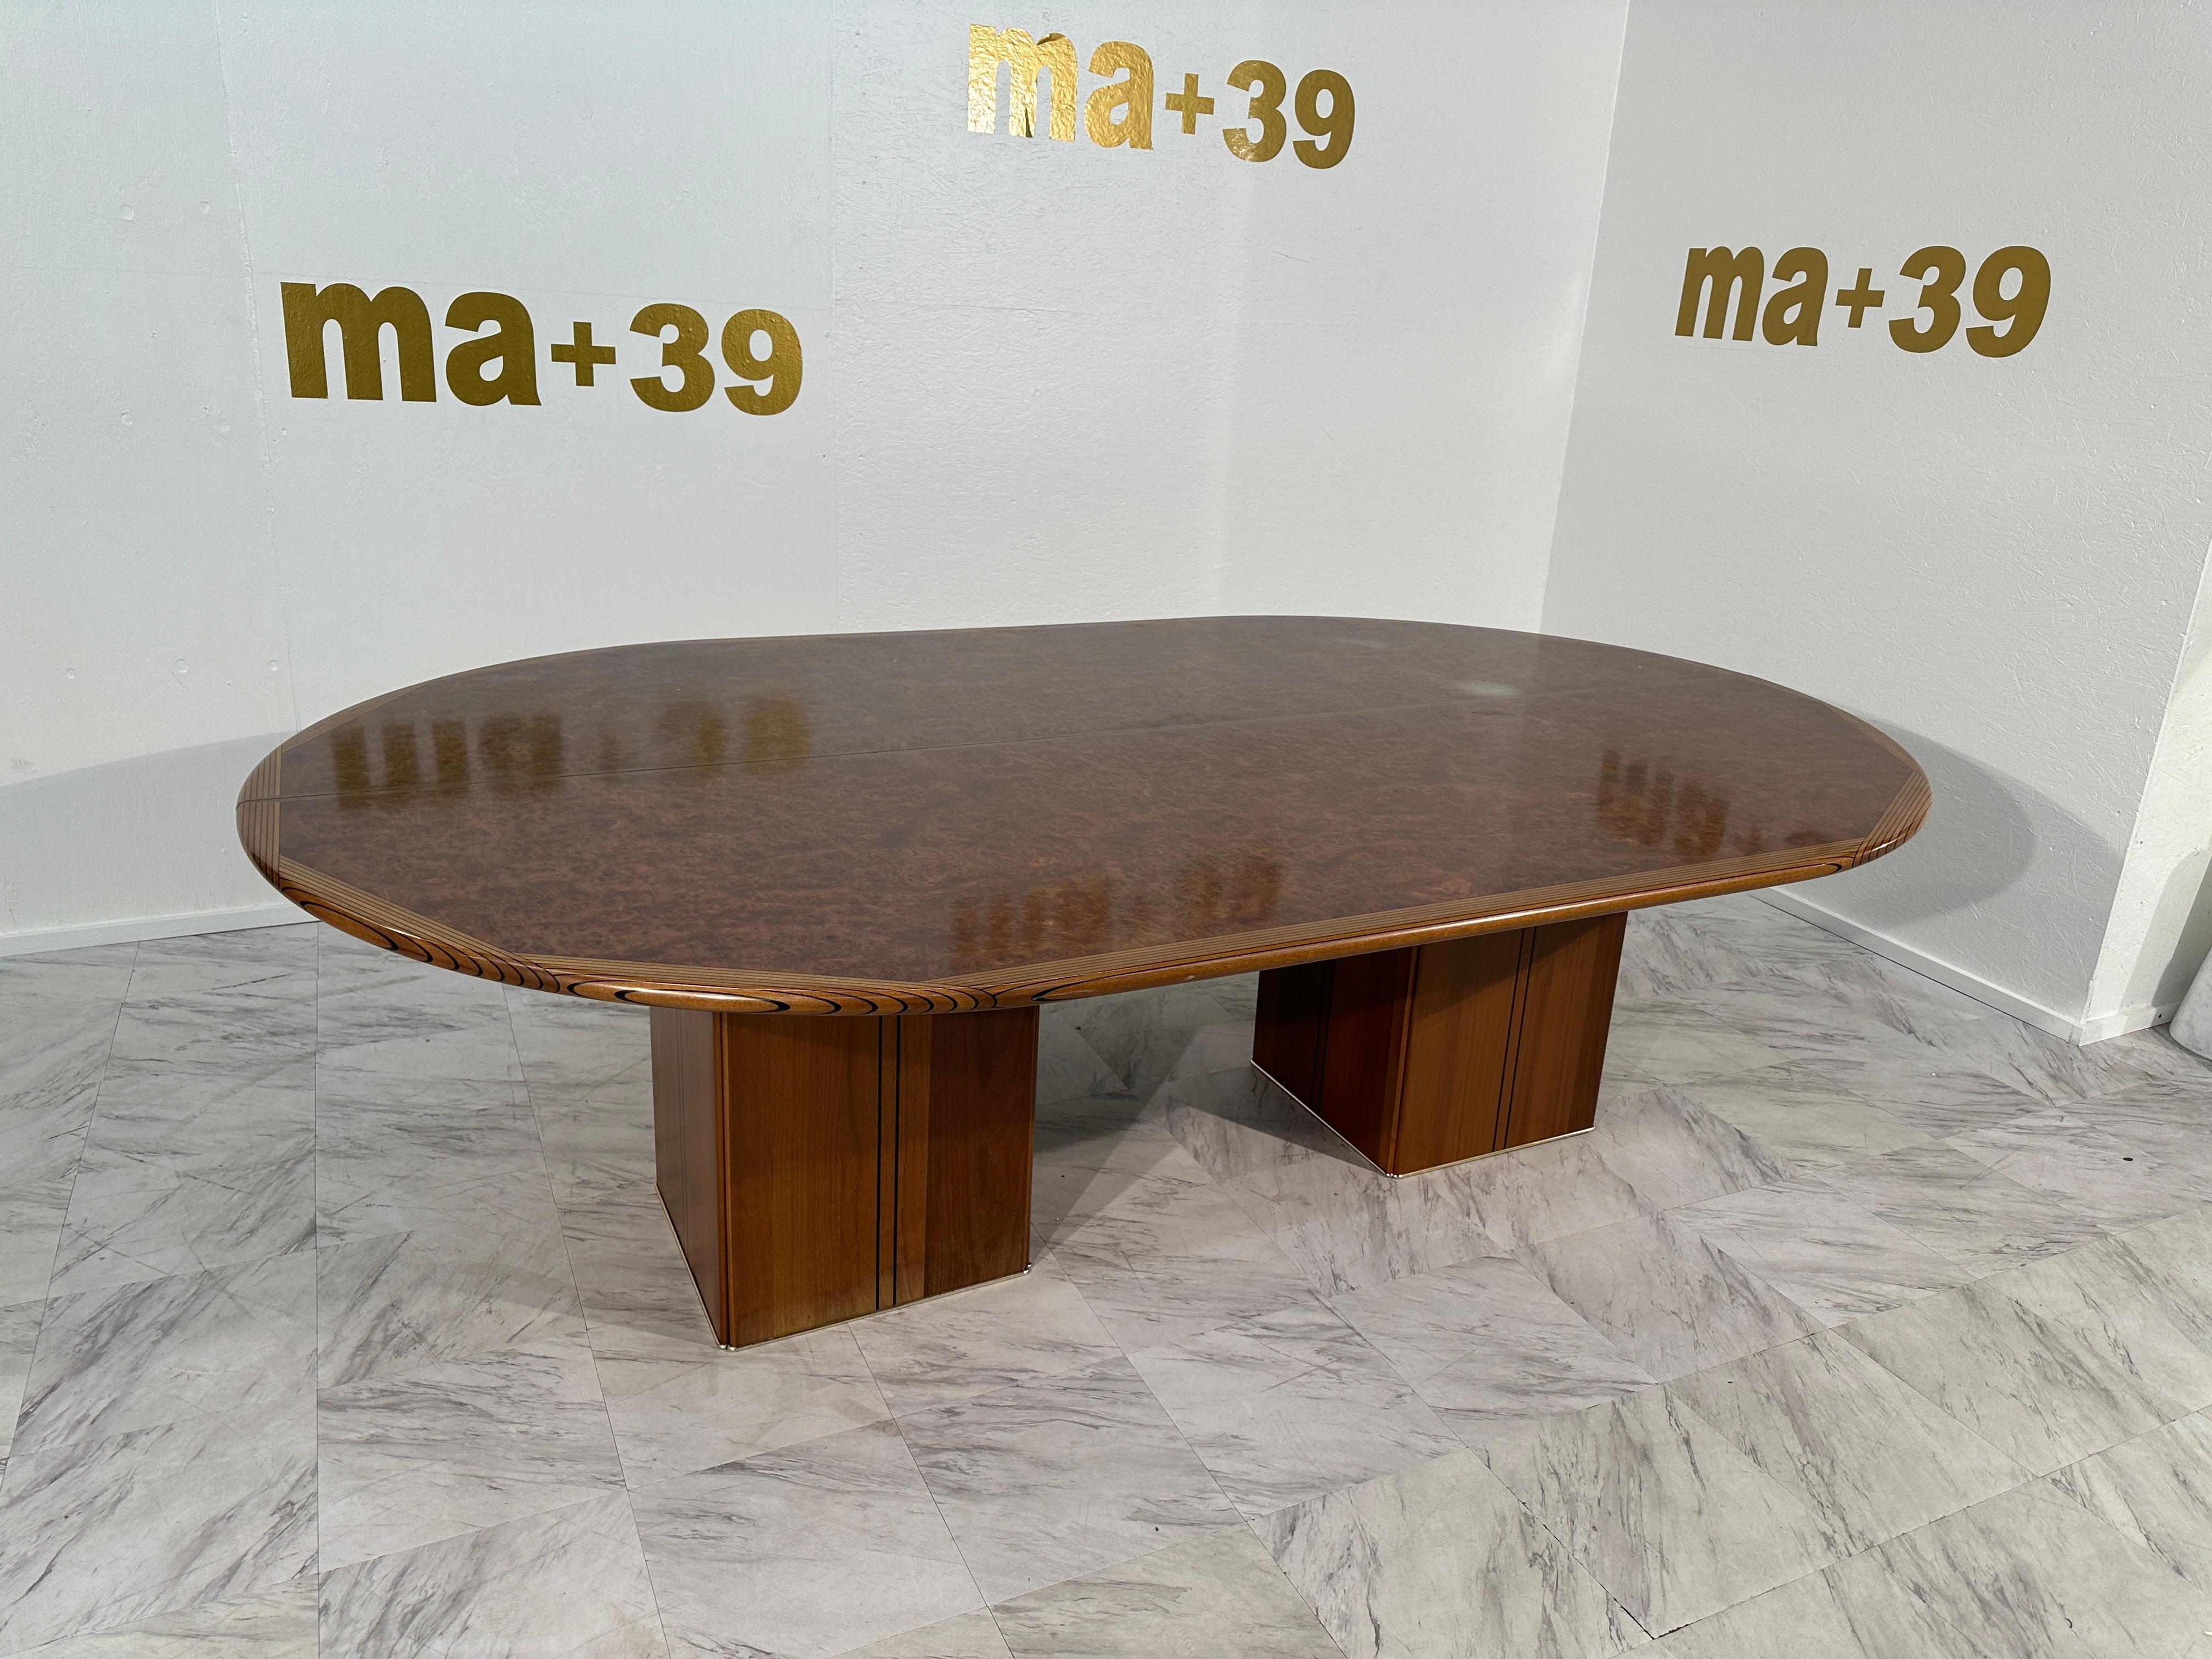 La table de conférence Tobia & Afra Scarpa Large Africa Wooden Conference Table de Maxalto, originaire de l'Italie des années 1970, incarne la sophistication élégante et le savoir-faire artisanal caractéristiques du design italien de cette époque.